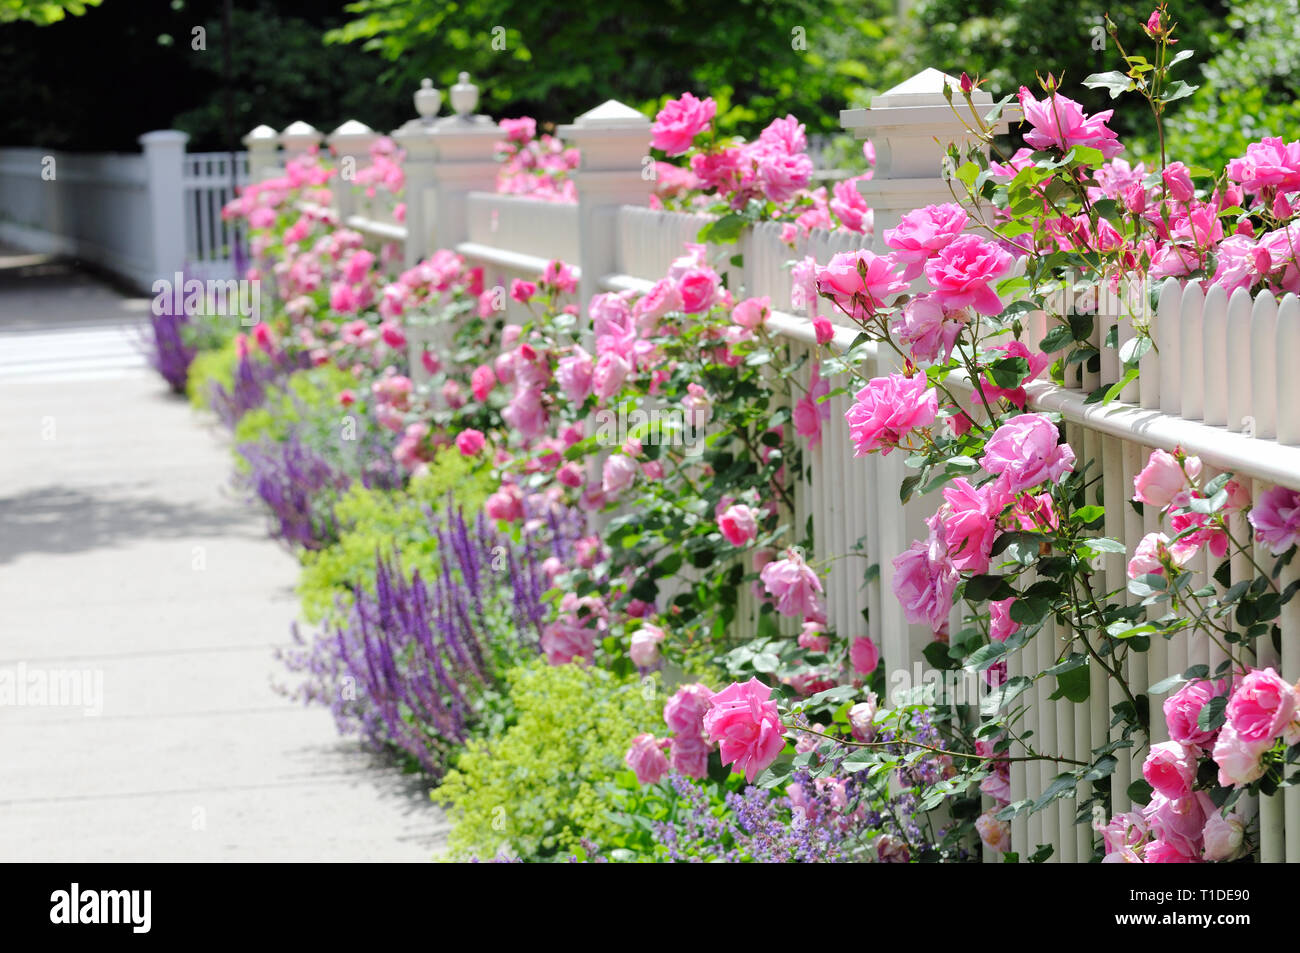 White staccionata in legno, rosa rose, colorato giardino confine aggiunta di frenare appello a home ingresso Foto Stock